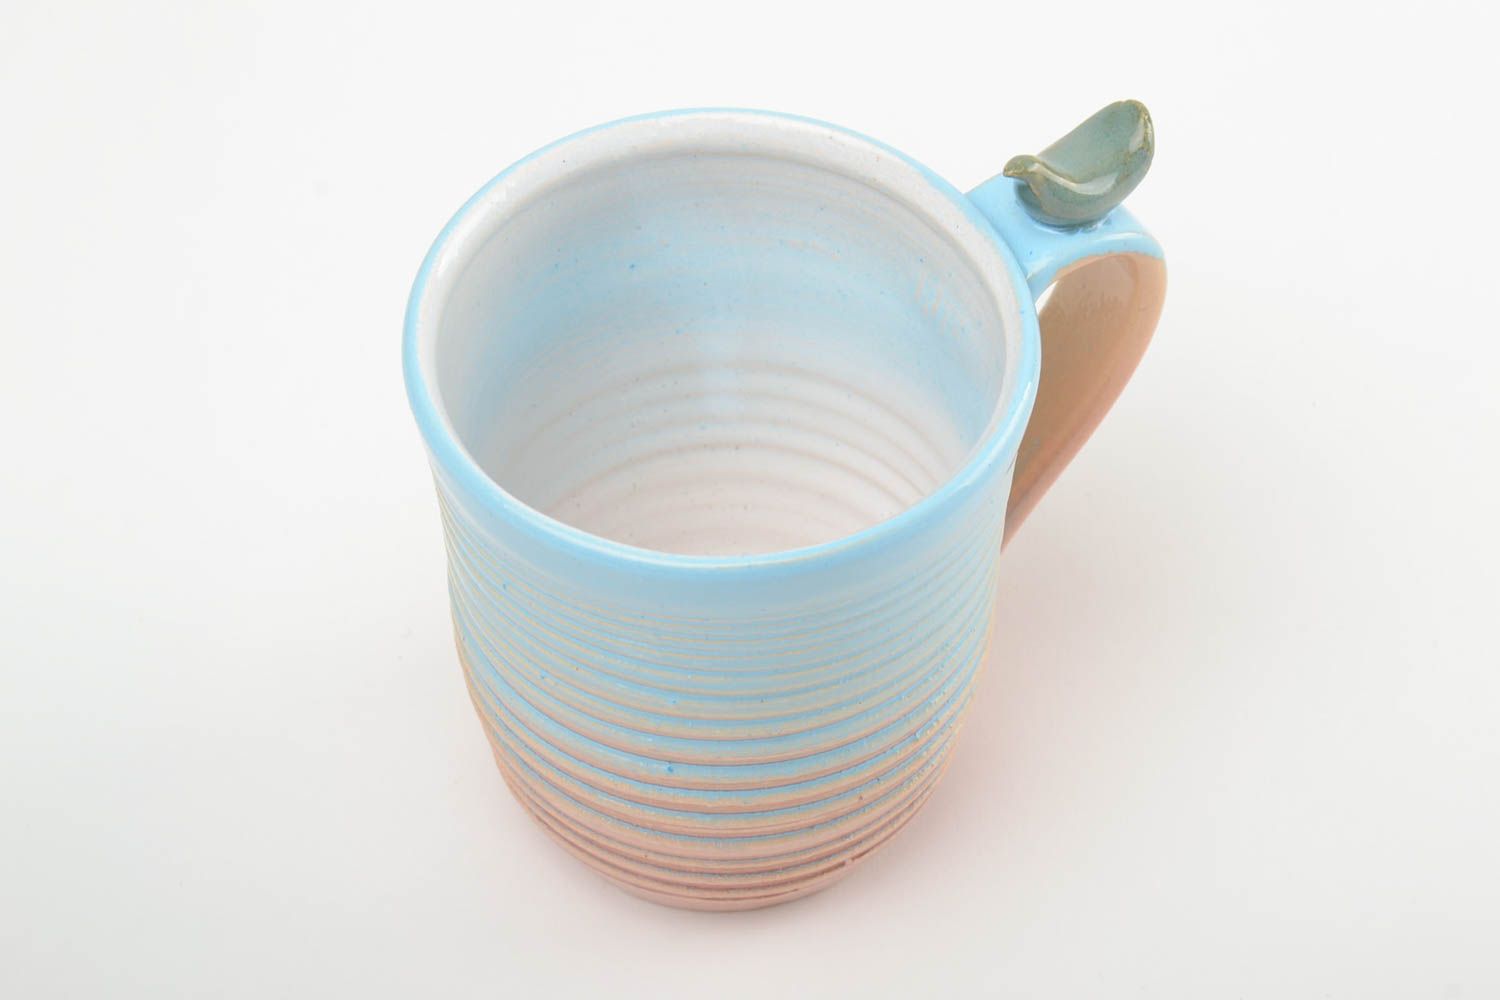 Глиняная чашка ручной работы расписанная глазурью и эмалью на 300 мл цветная фото 4